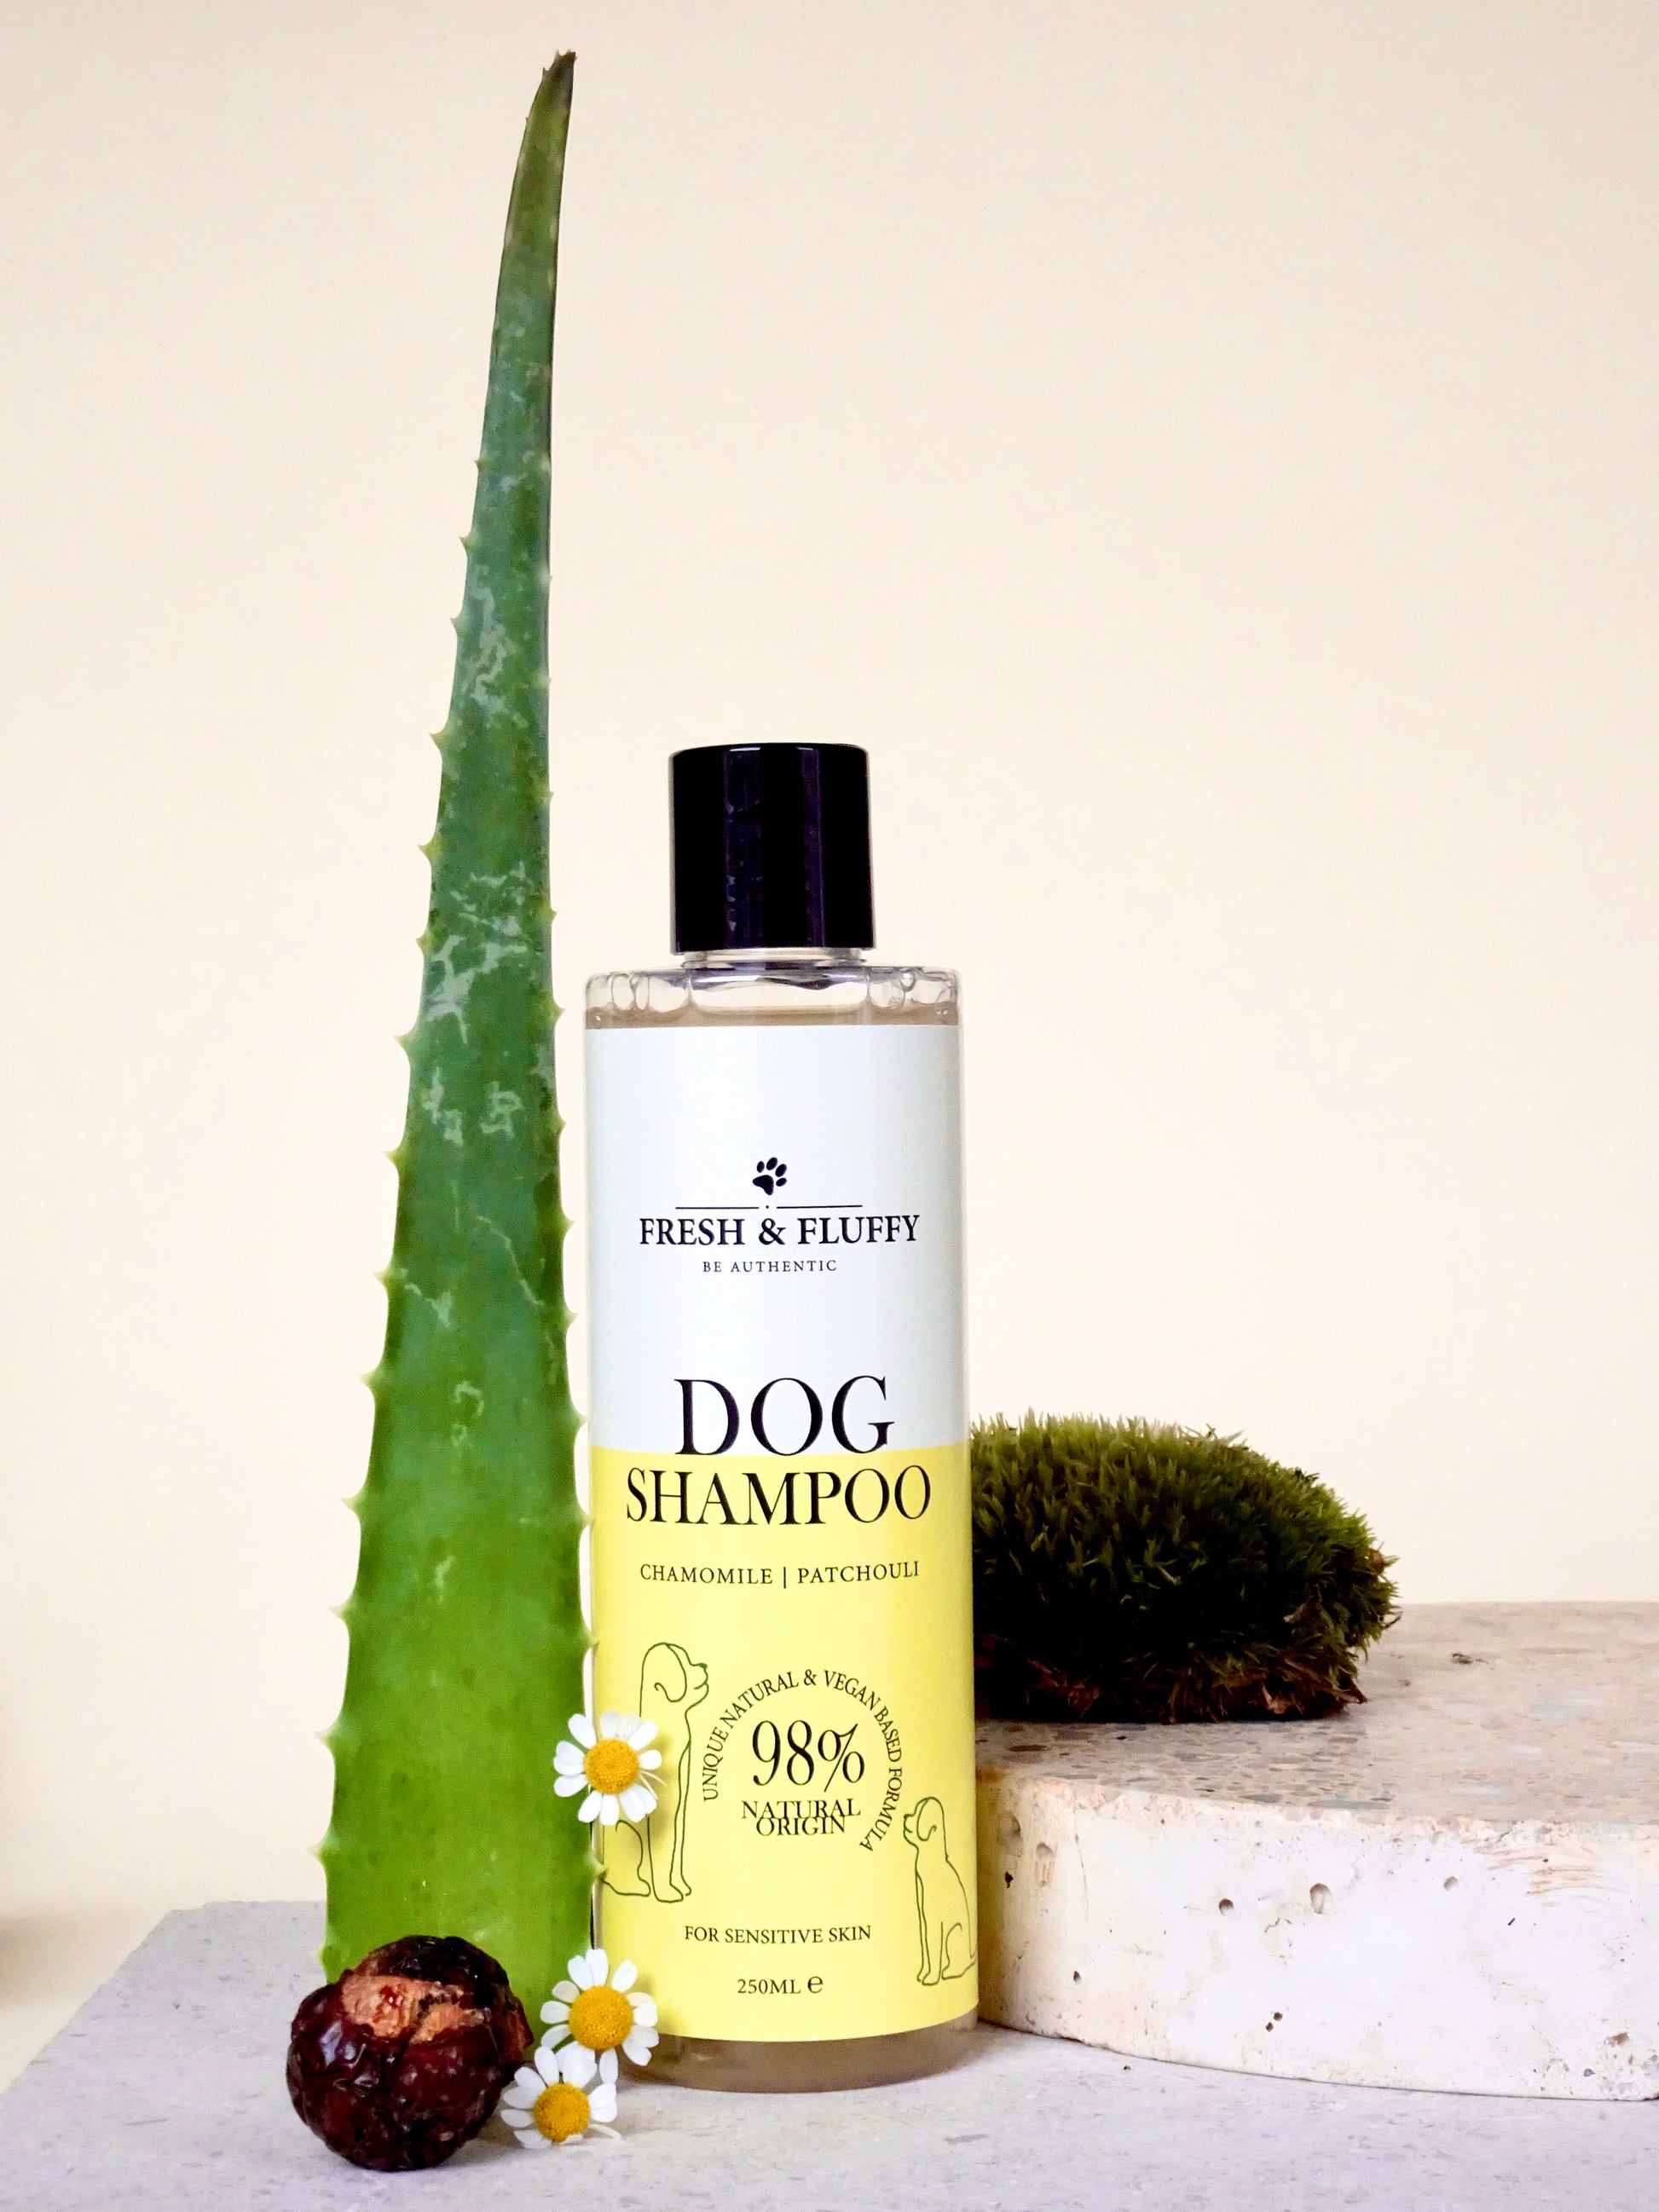 Natuurlijke hondenshampoo voor de gevoelige huid voor maar €9,95. Bestel deze hondenshampoo nu met gratis verzending. Deze shampoo voor de hond bevat kamille en Aloe vera. Natuurlijke ingredienten verminderd jeuk, irritaties en kalmeert de huid van uw hond.